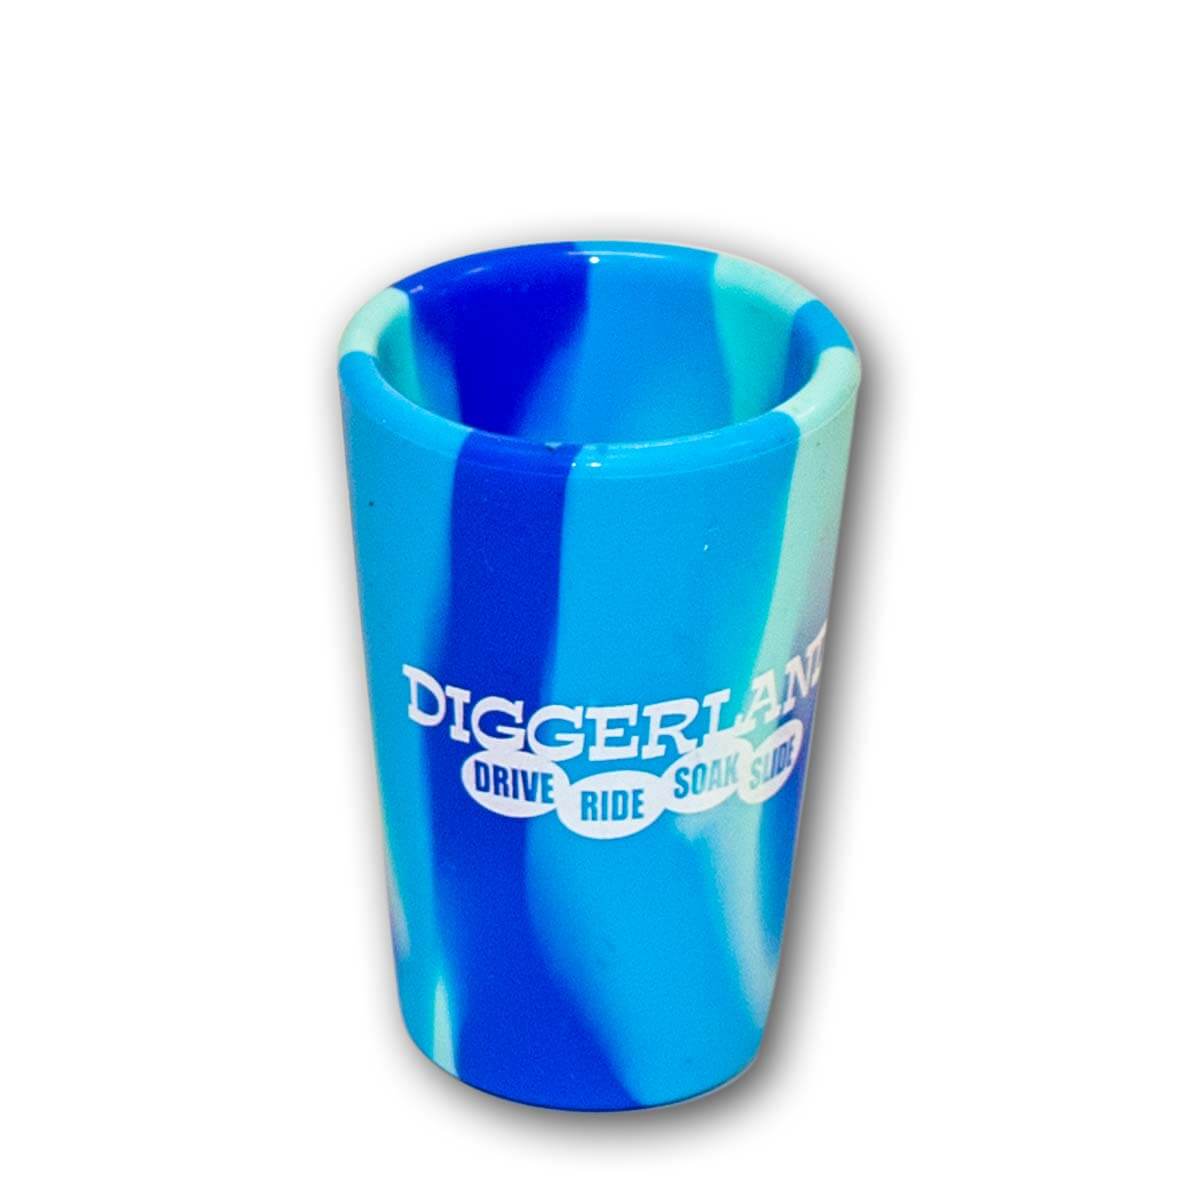 Diggerland Artic Blue Tie Dye Shot Glass - Diggerland USA